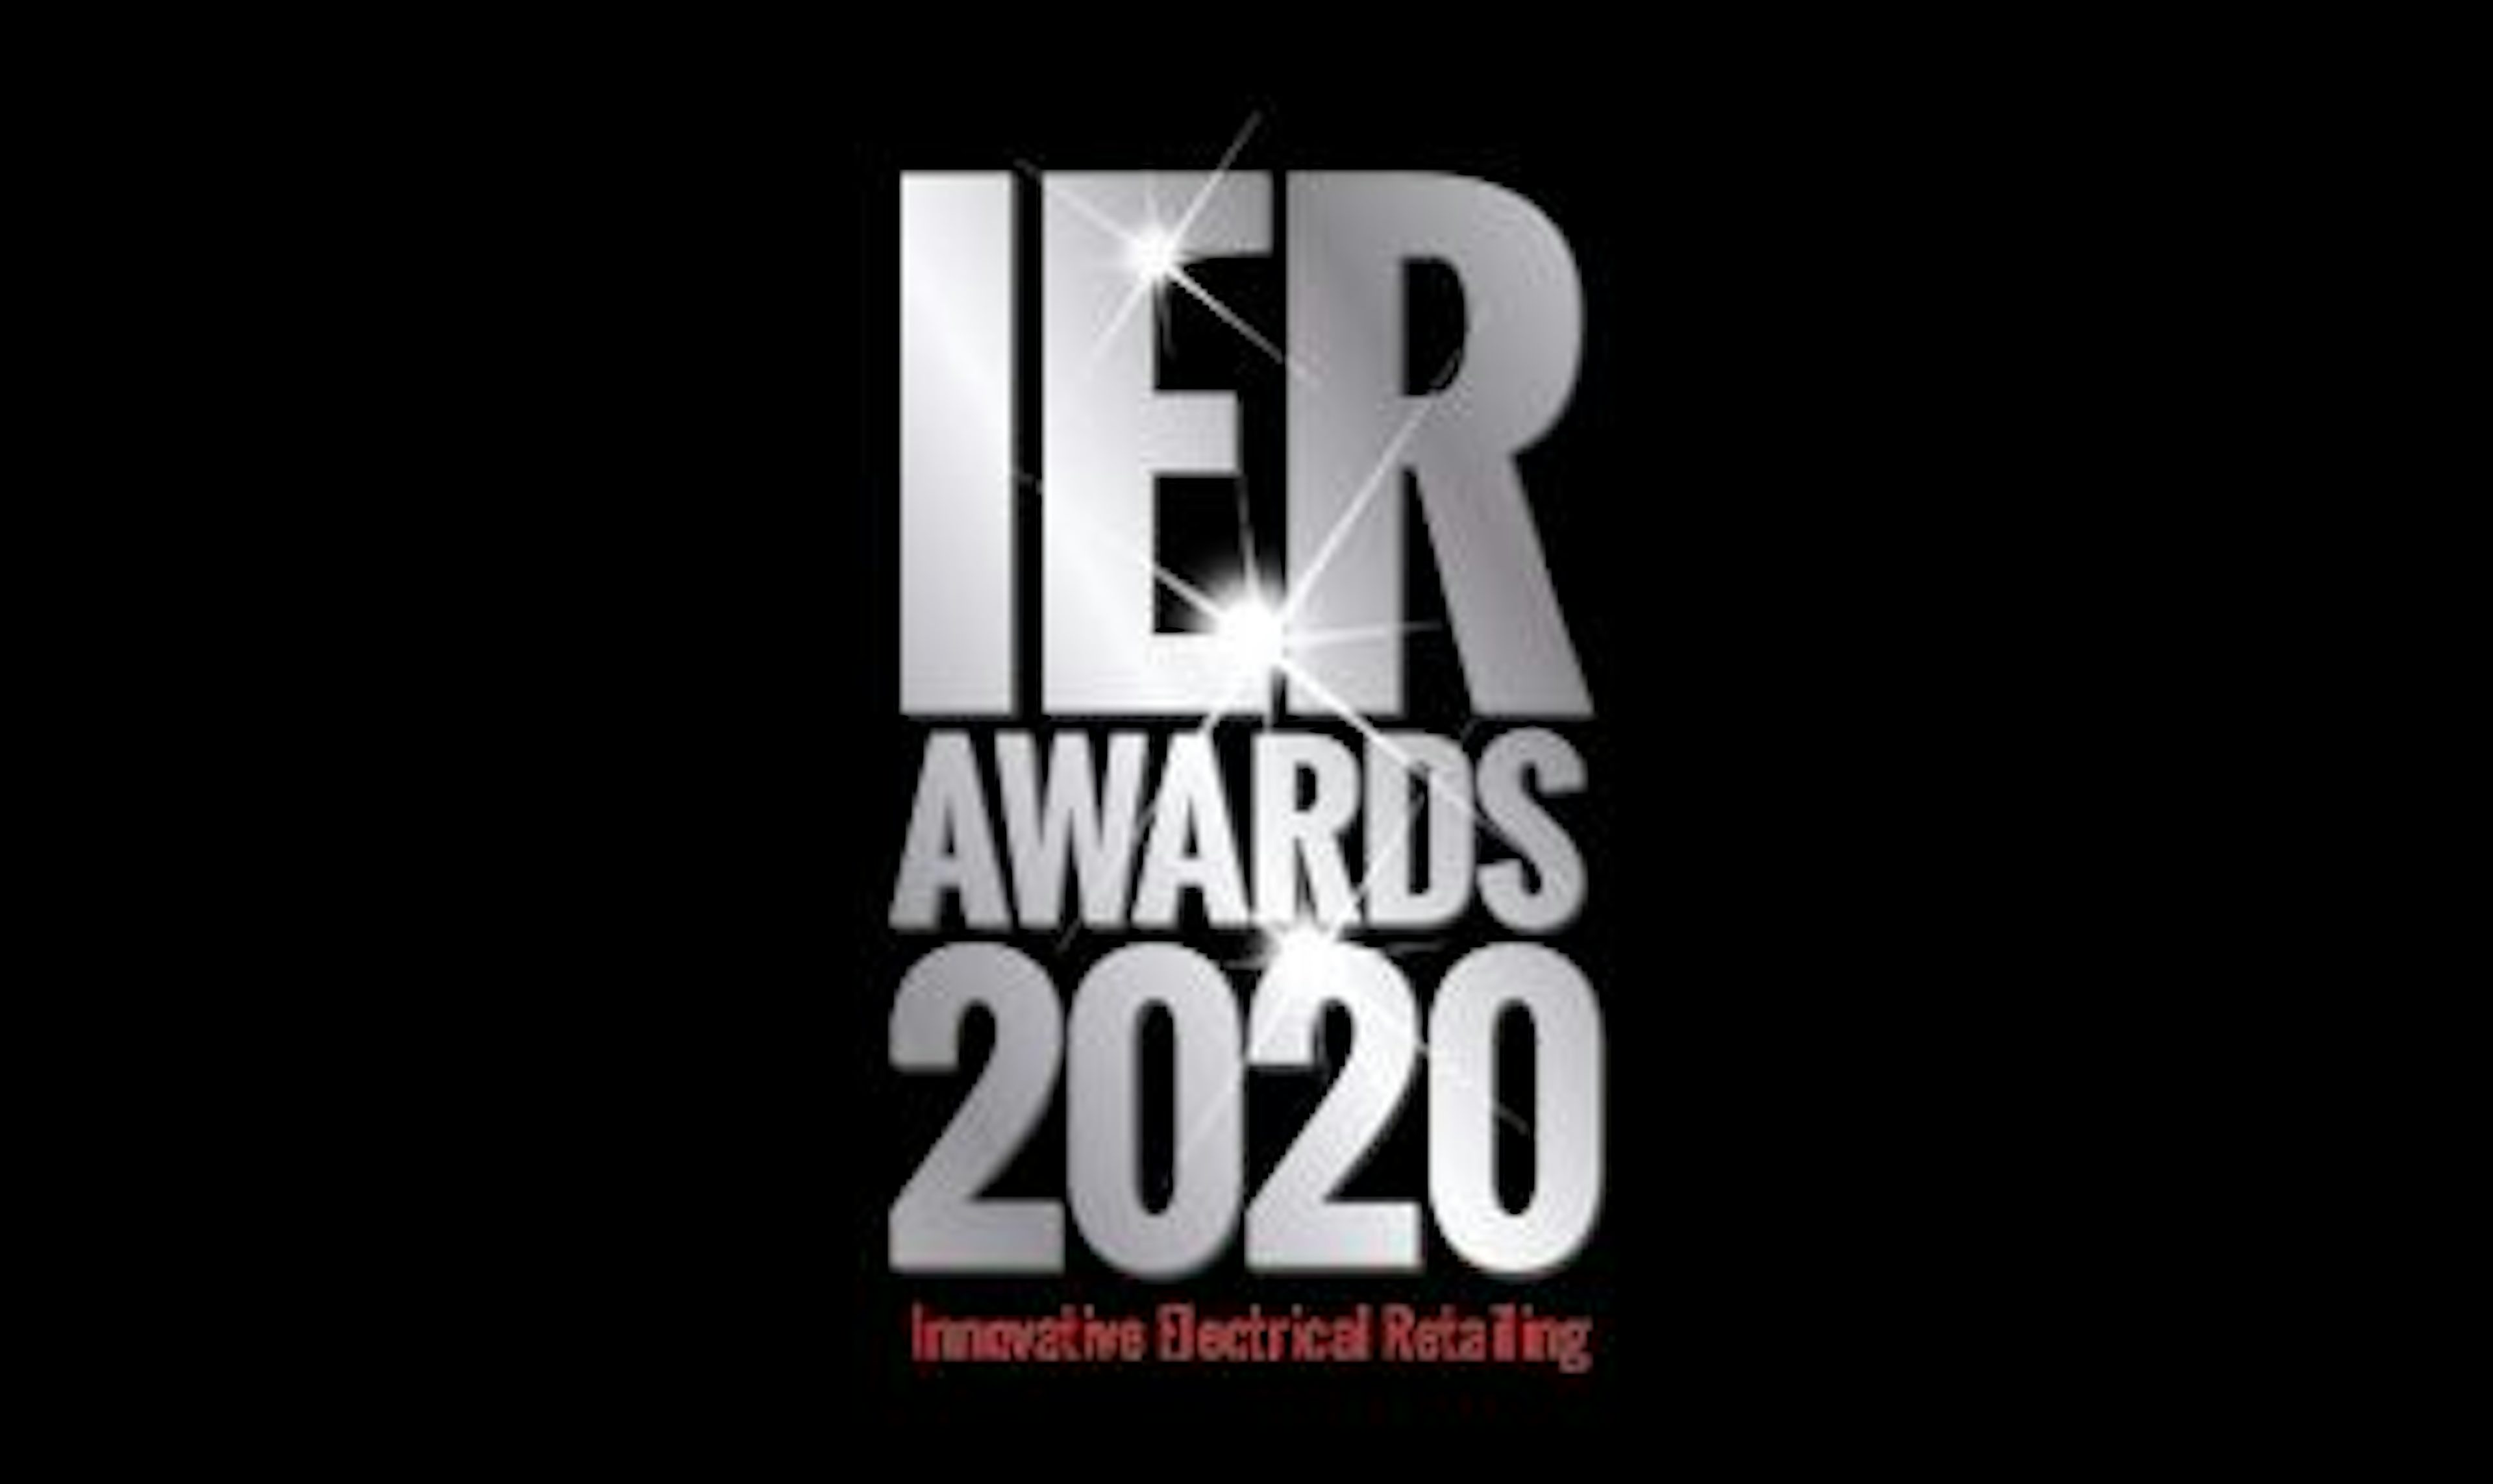 IER (Innovative Electrical Retailing) 2020 awards logo